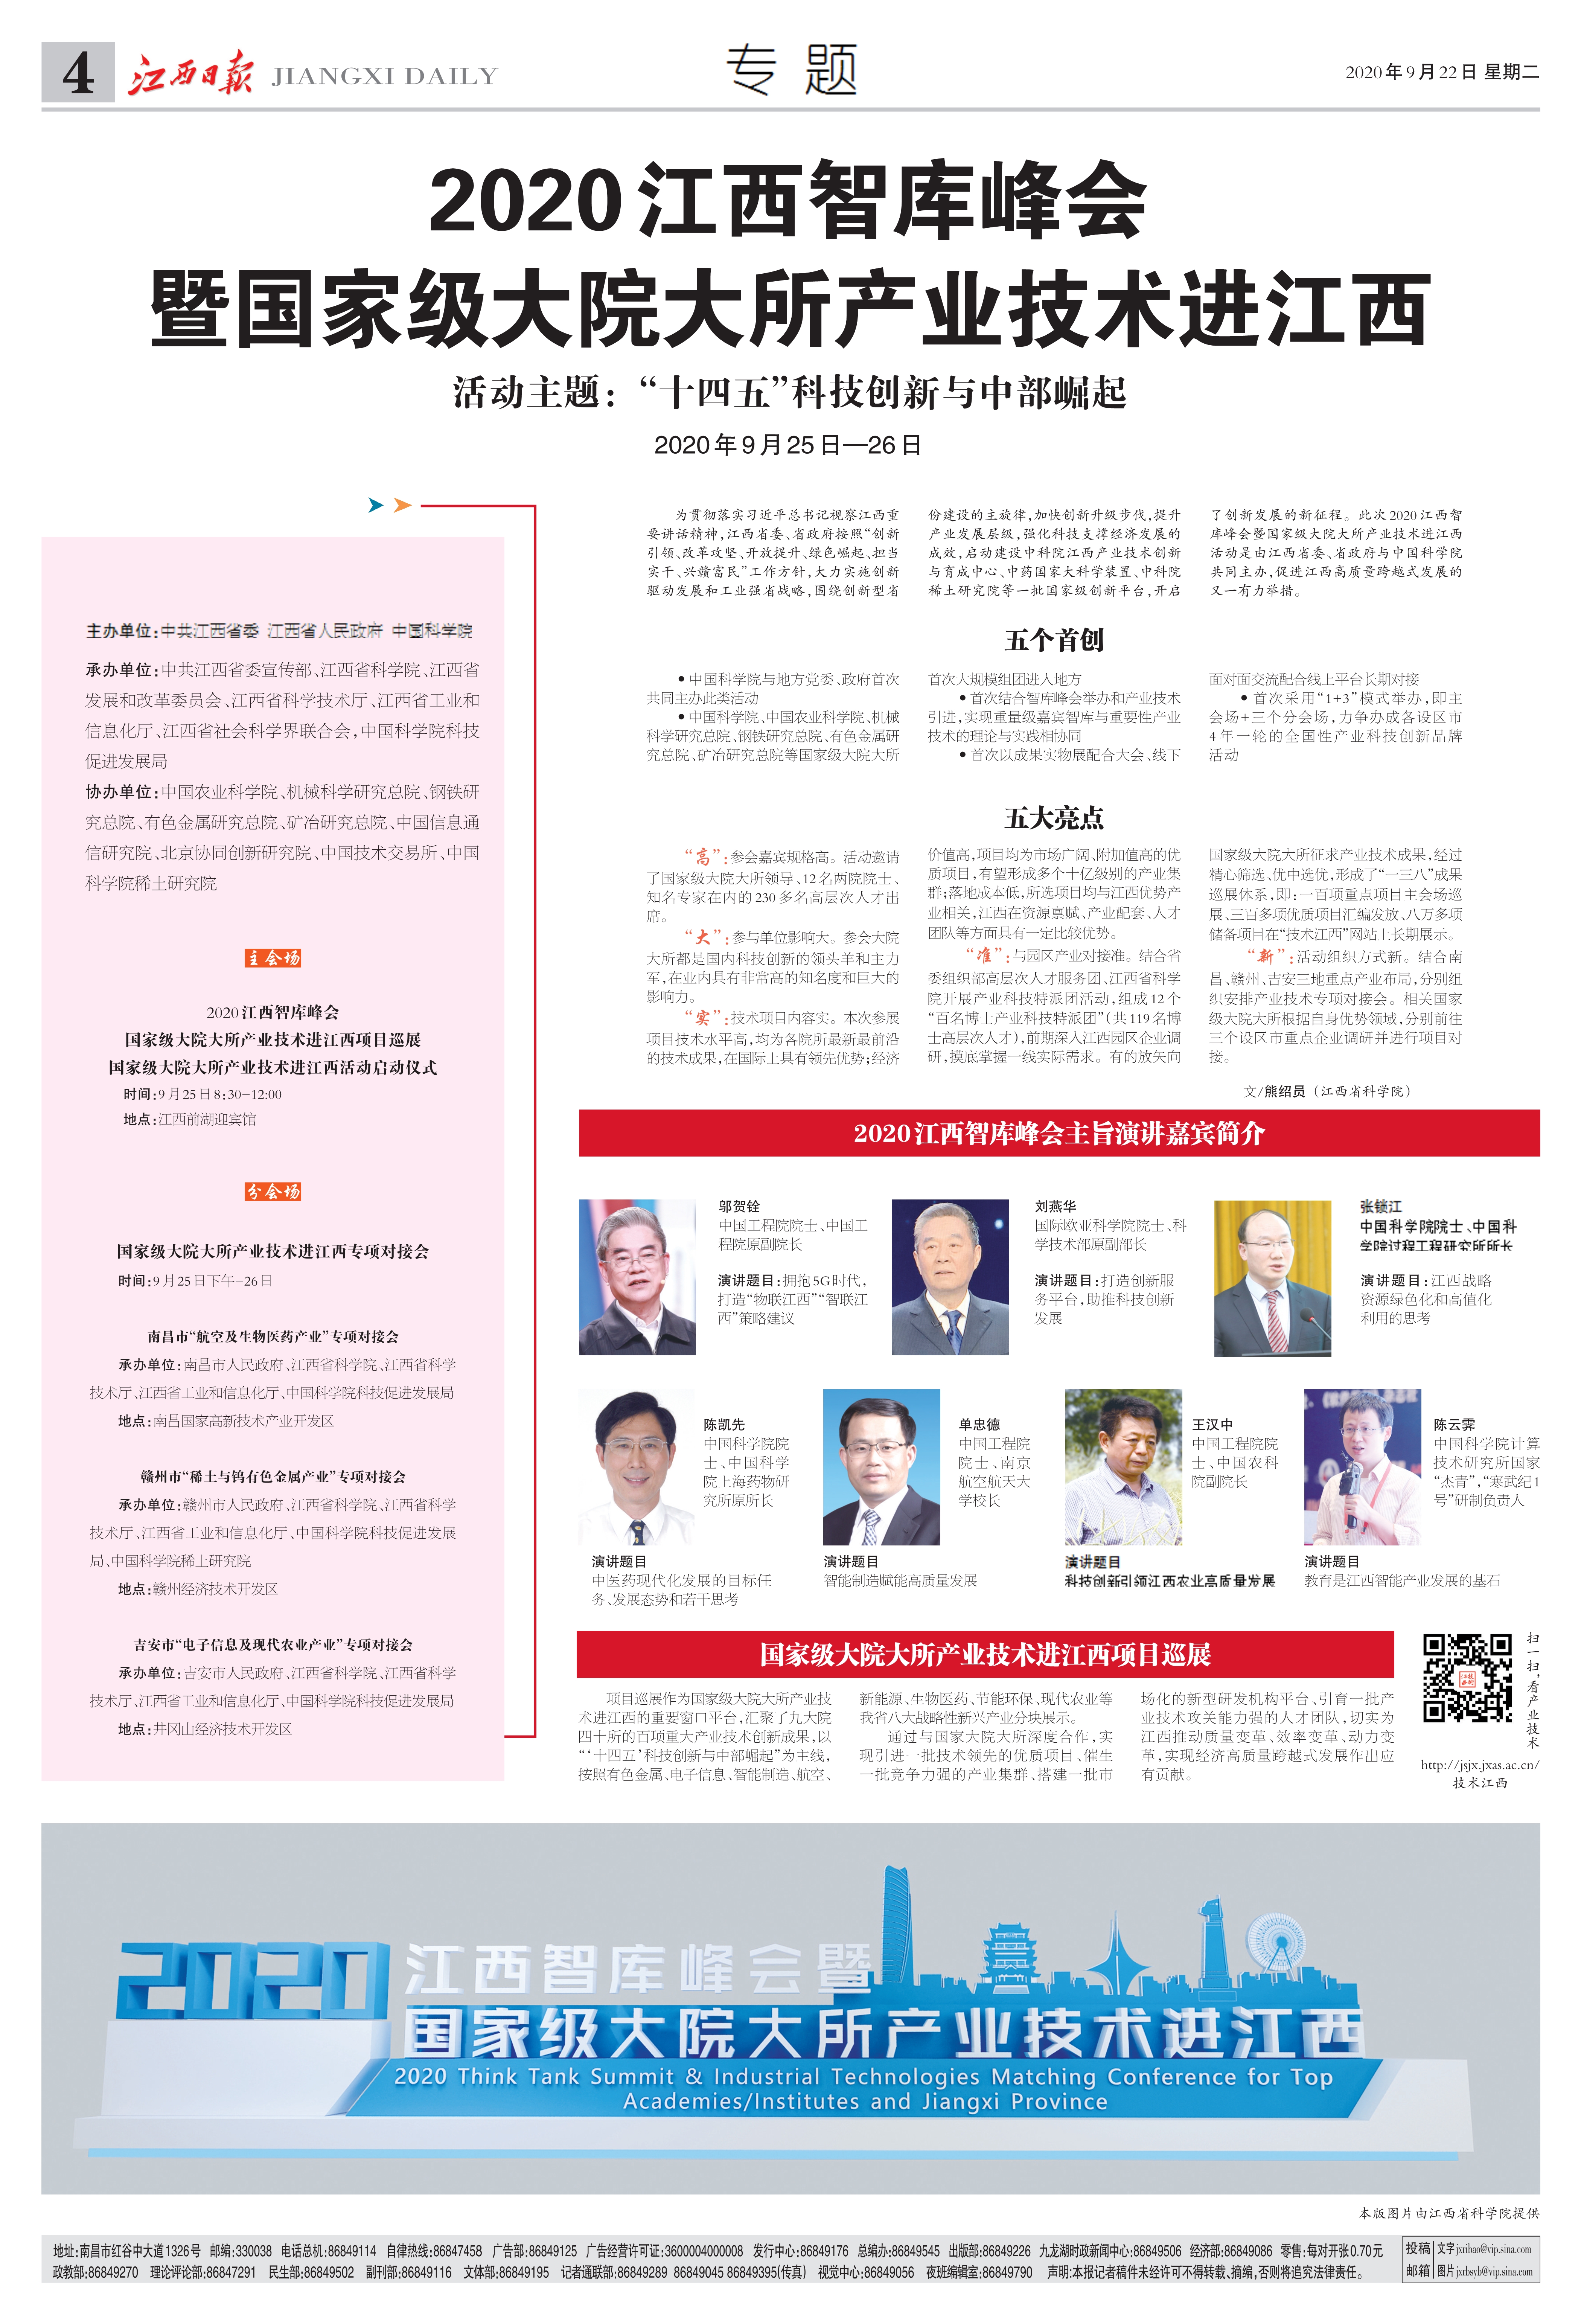 《江西日报》专题整版宣传我院2020江西智库峰会暨大院大所产业技术进江西活动